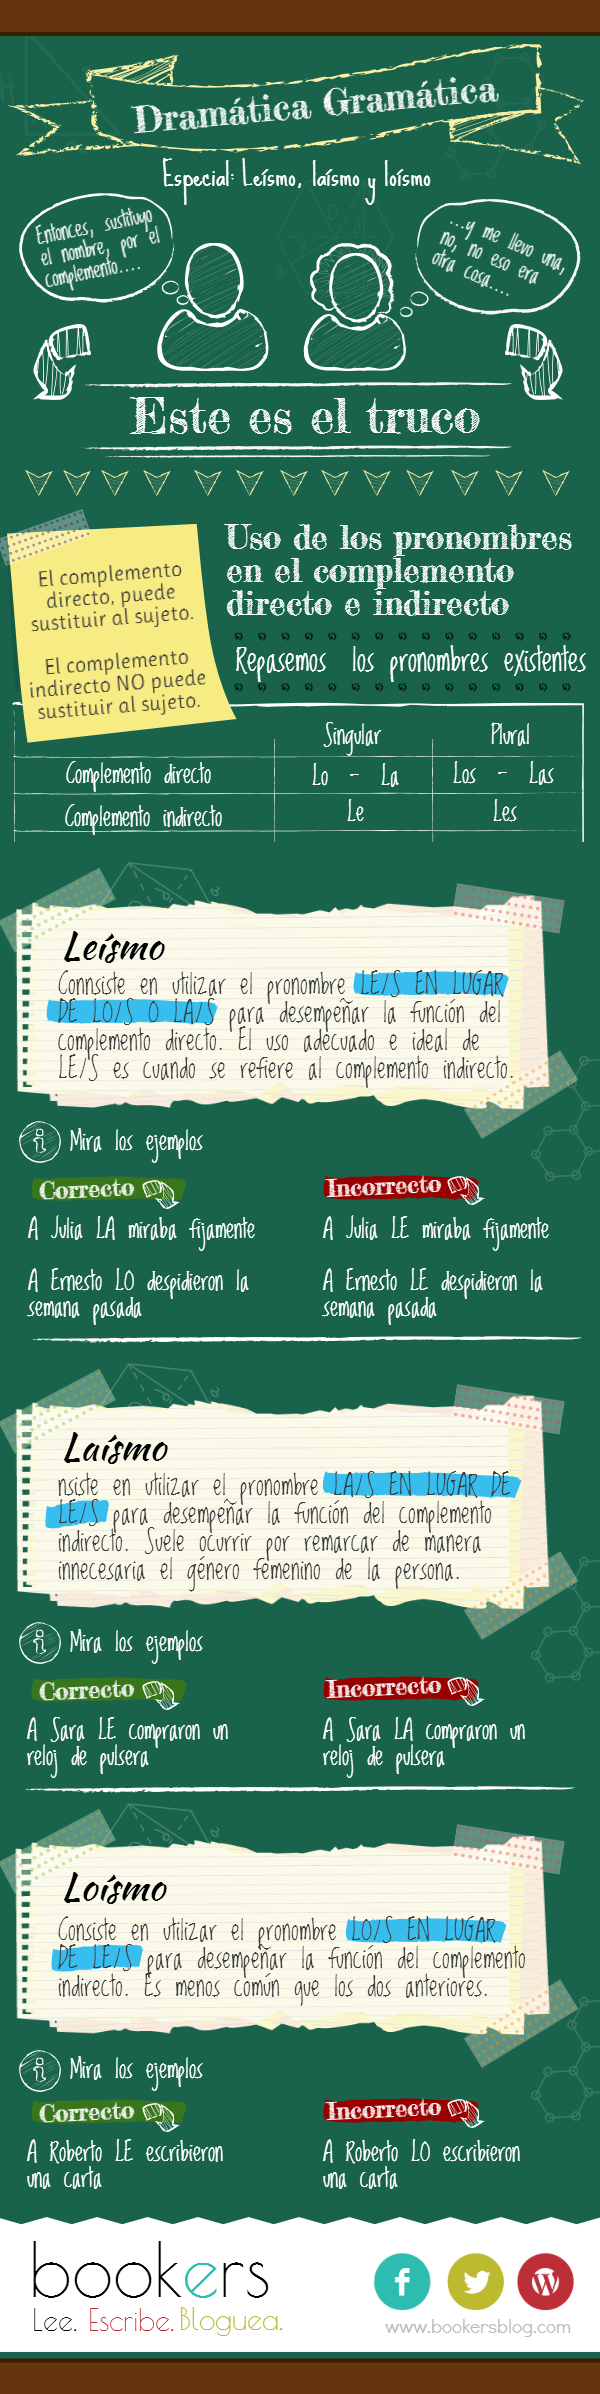 Dramática Gramática - Leísmo, Laísmo, Loísmo